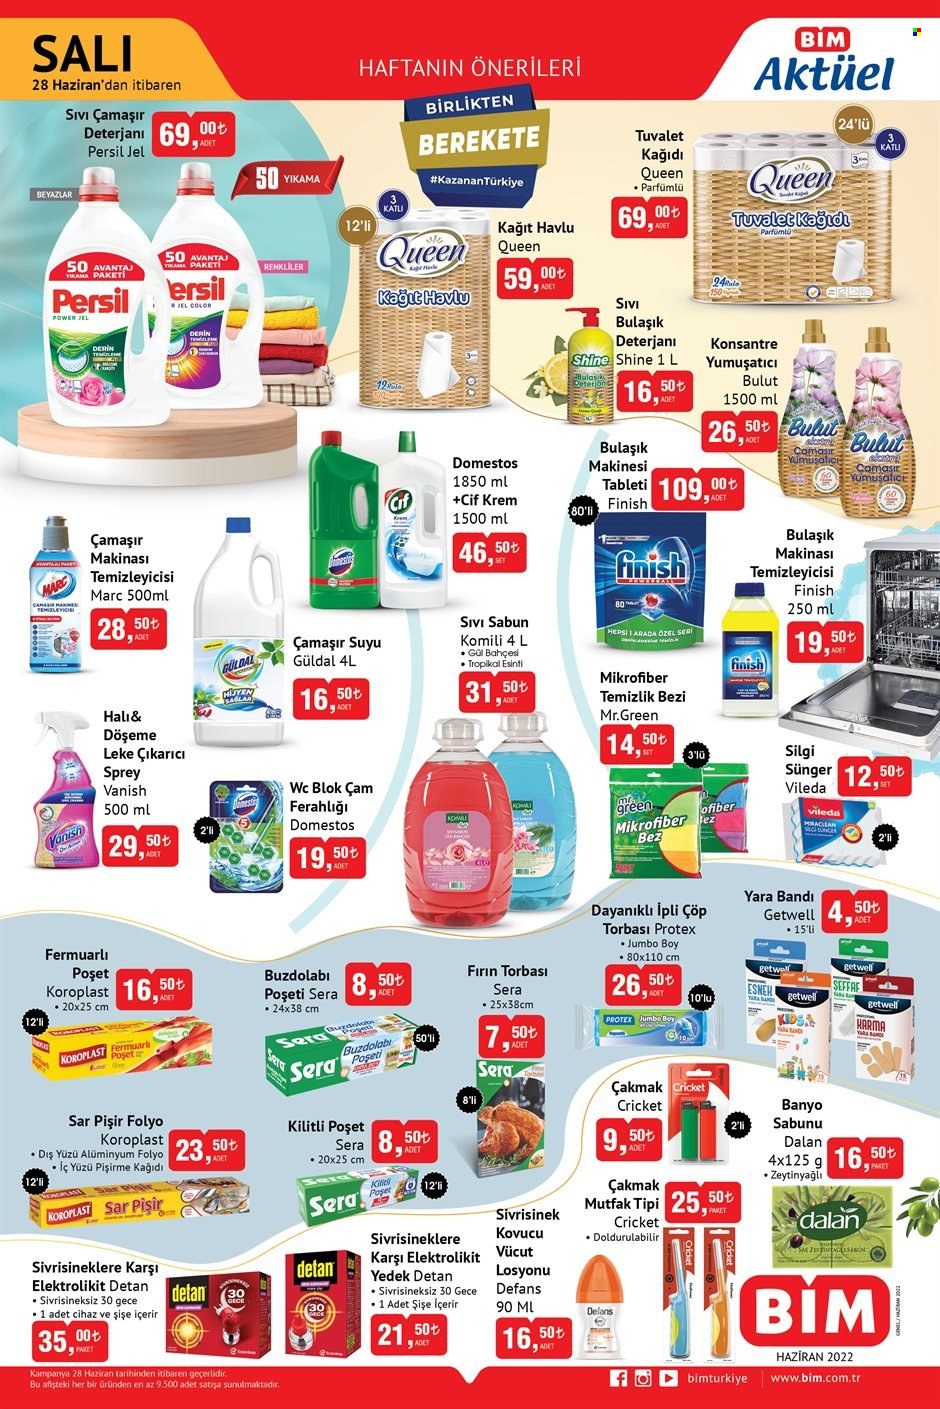 thumbnail - BİM aktüel ürünler, broşür  - 6.28.2022 - 7.7.2022 - Satıştaki ürünler - Persil, sabun, sıvı sabunu, losyonu, vücut losyonu. Sayfa 2.